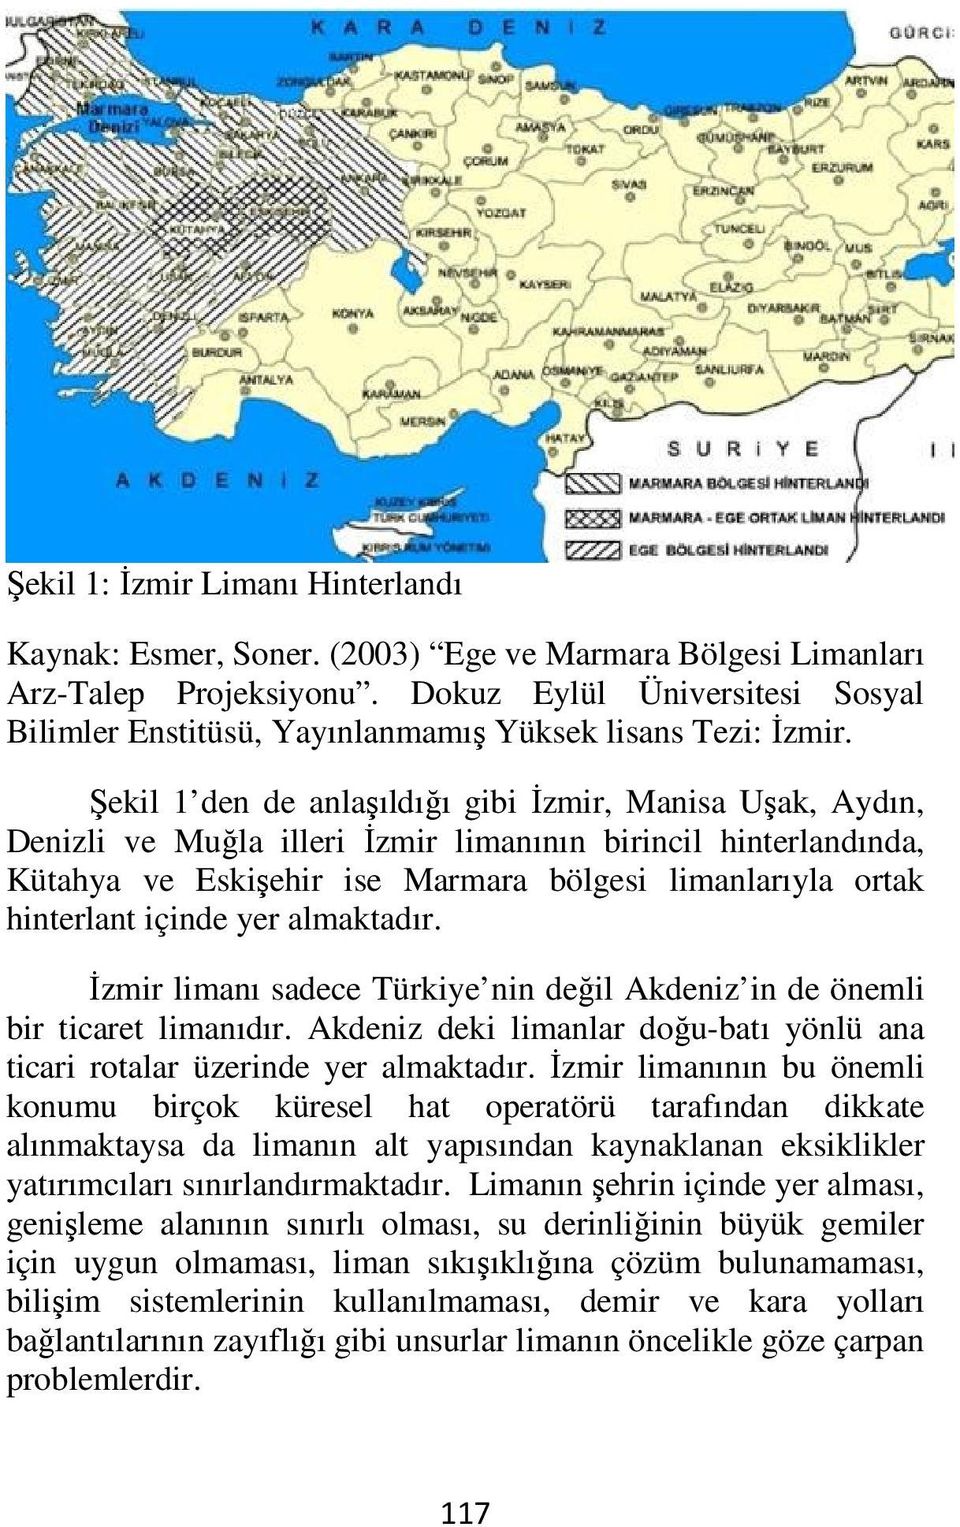 Şekil 1 den de anlaşıldığı gibi İzmir, Manisa Uşak, Aydın, Denizli ve Muğla illeri İzmir limanının birincil hinterlandında, Kütahya ve Eskişehir ise Marmara bölgesi limanlarıyla ortak hinterlant